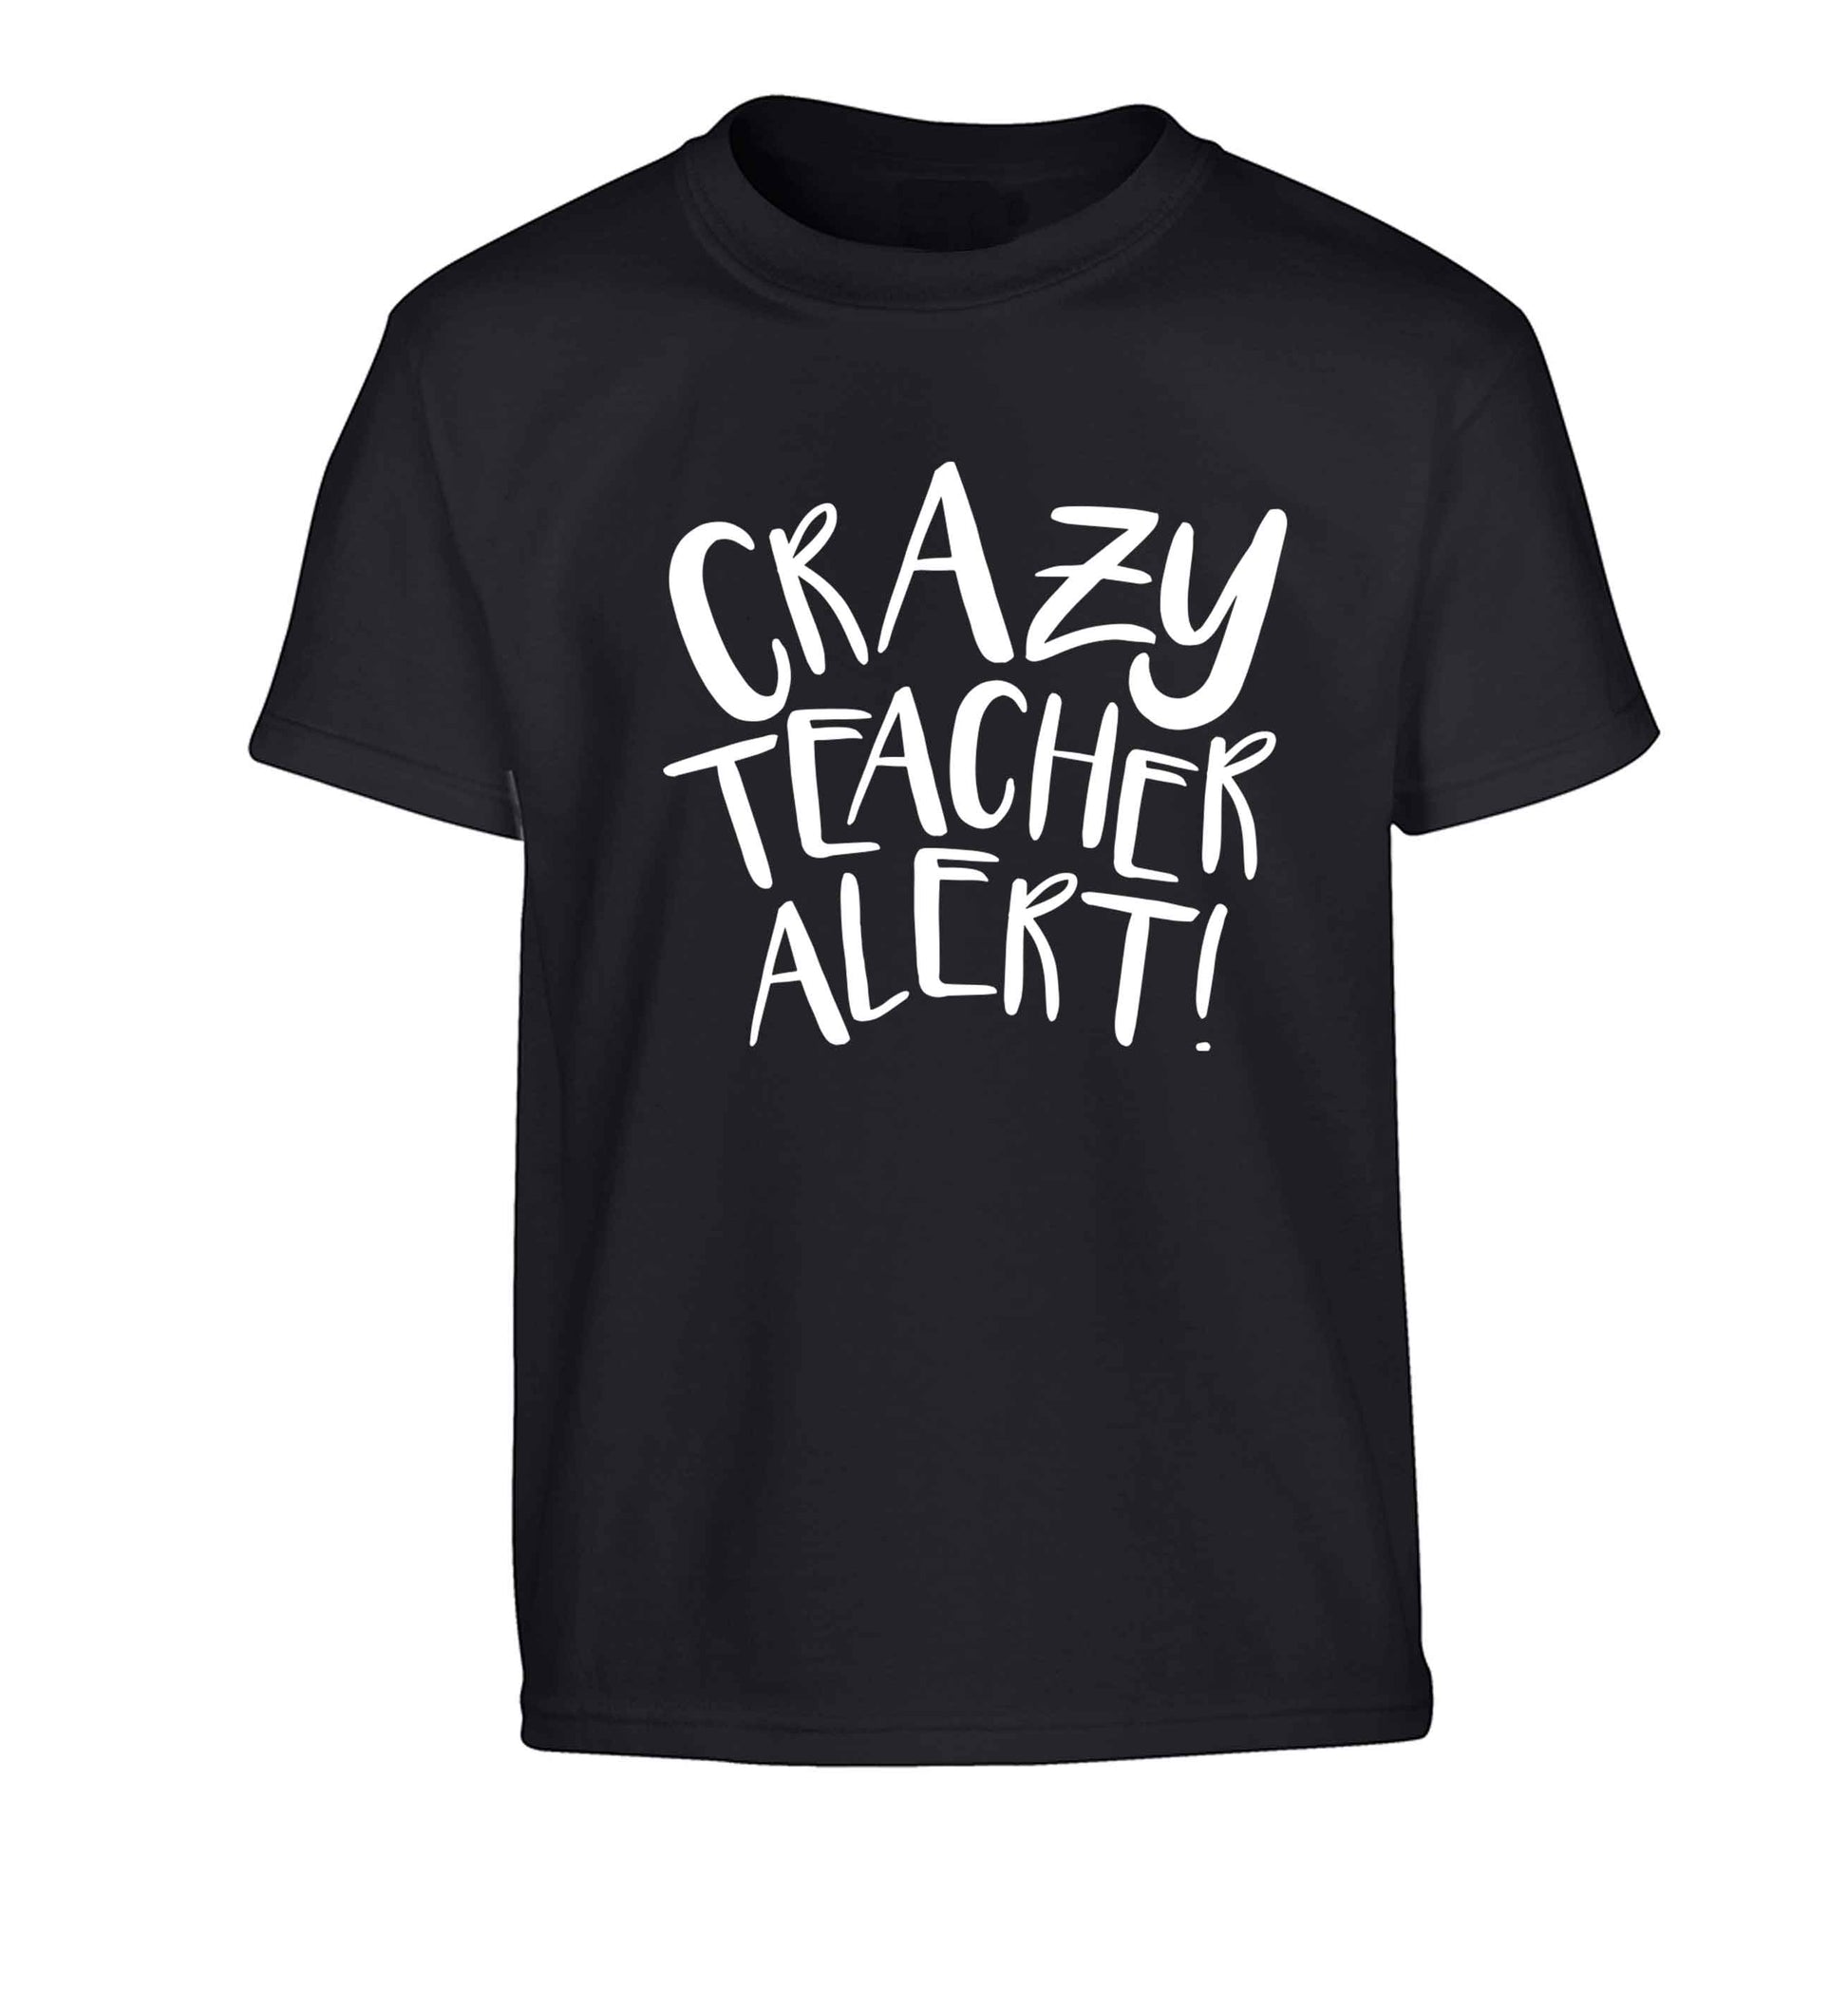 Crazy teacher alert Children's black Tshirt 12-13 Years